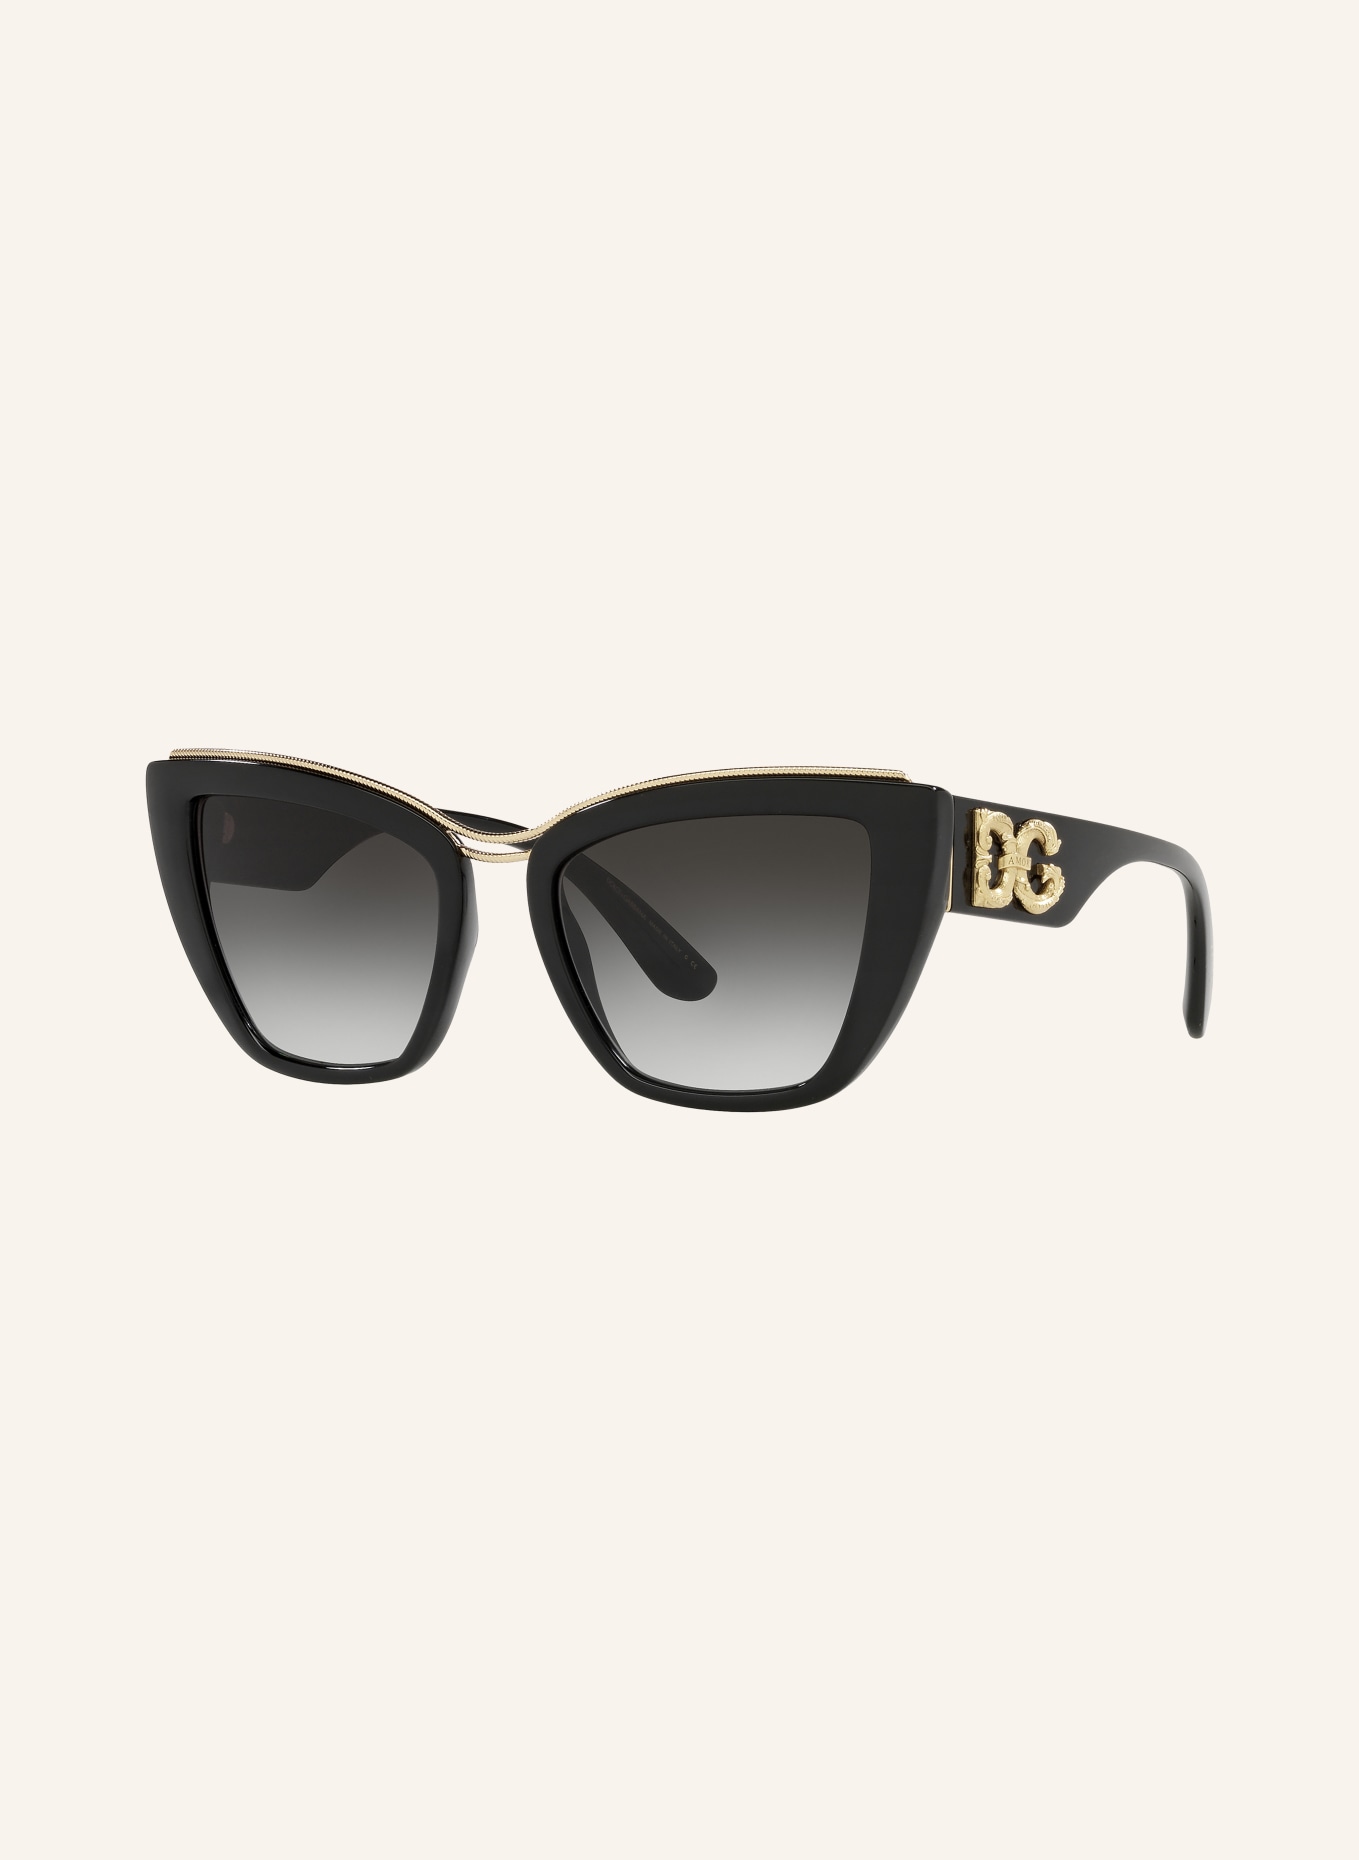 DOLCE & GABBANA Sunglasses DG6144, Color: 501/8G - BLACK/BLACK GRADIENT (Image 1)